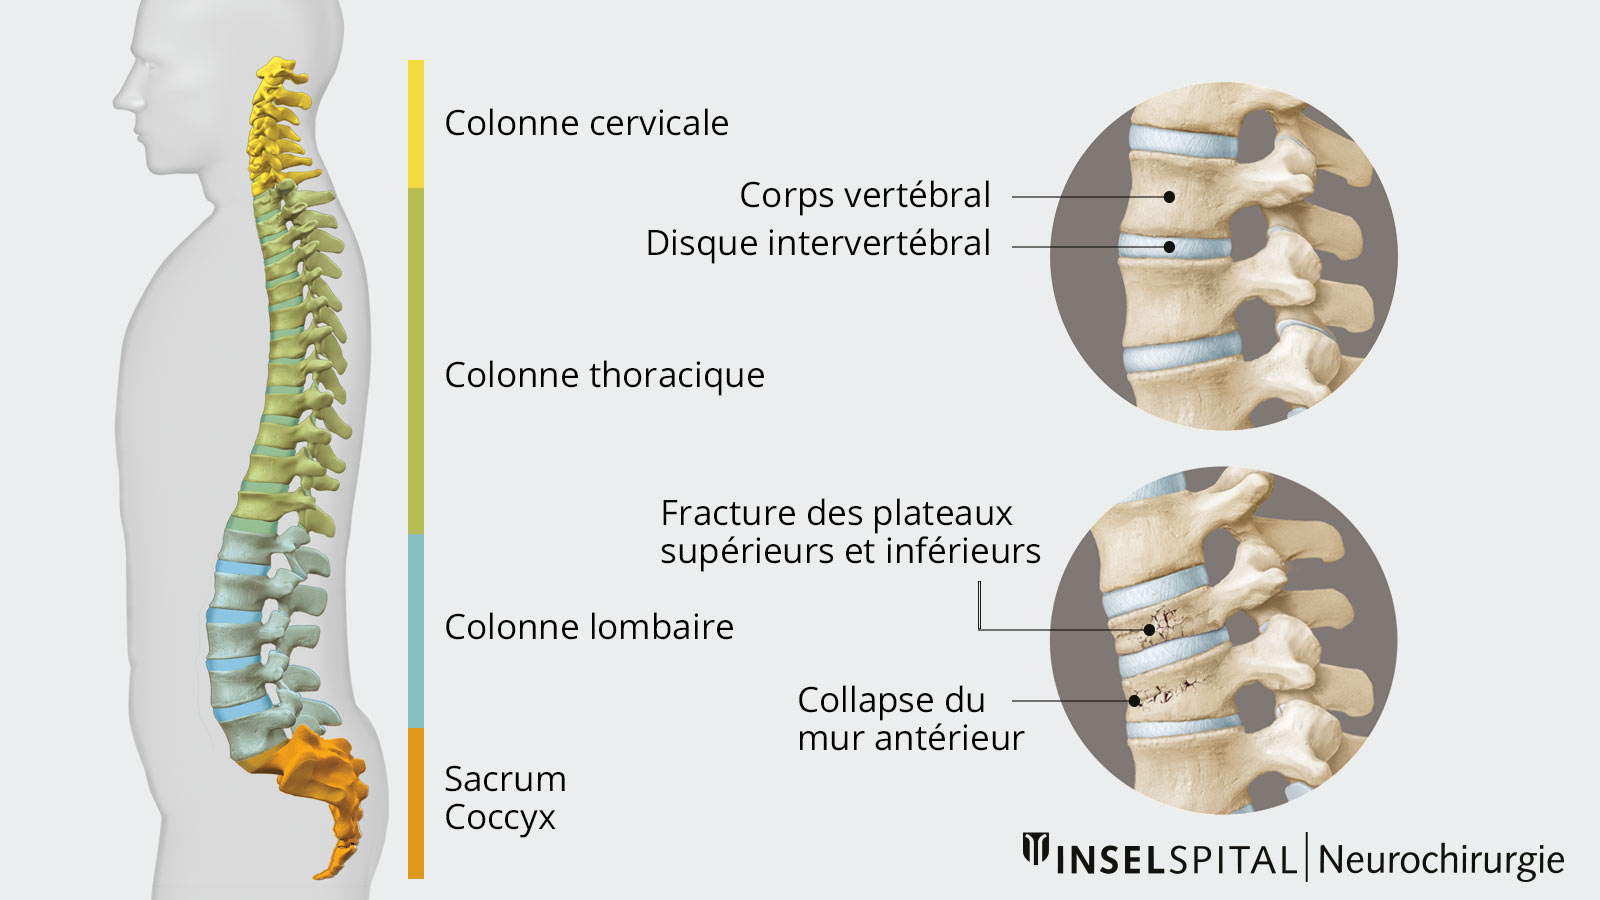 Dessin de la colonne vertébrale complète vue de côté. Les différentes vertèbres sont marquées par des couleurs différentes. En vue détaillée, on voit les corps vertébraux et les disques intervertébraux ainsi que 2 types de fractures vertébrales.